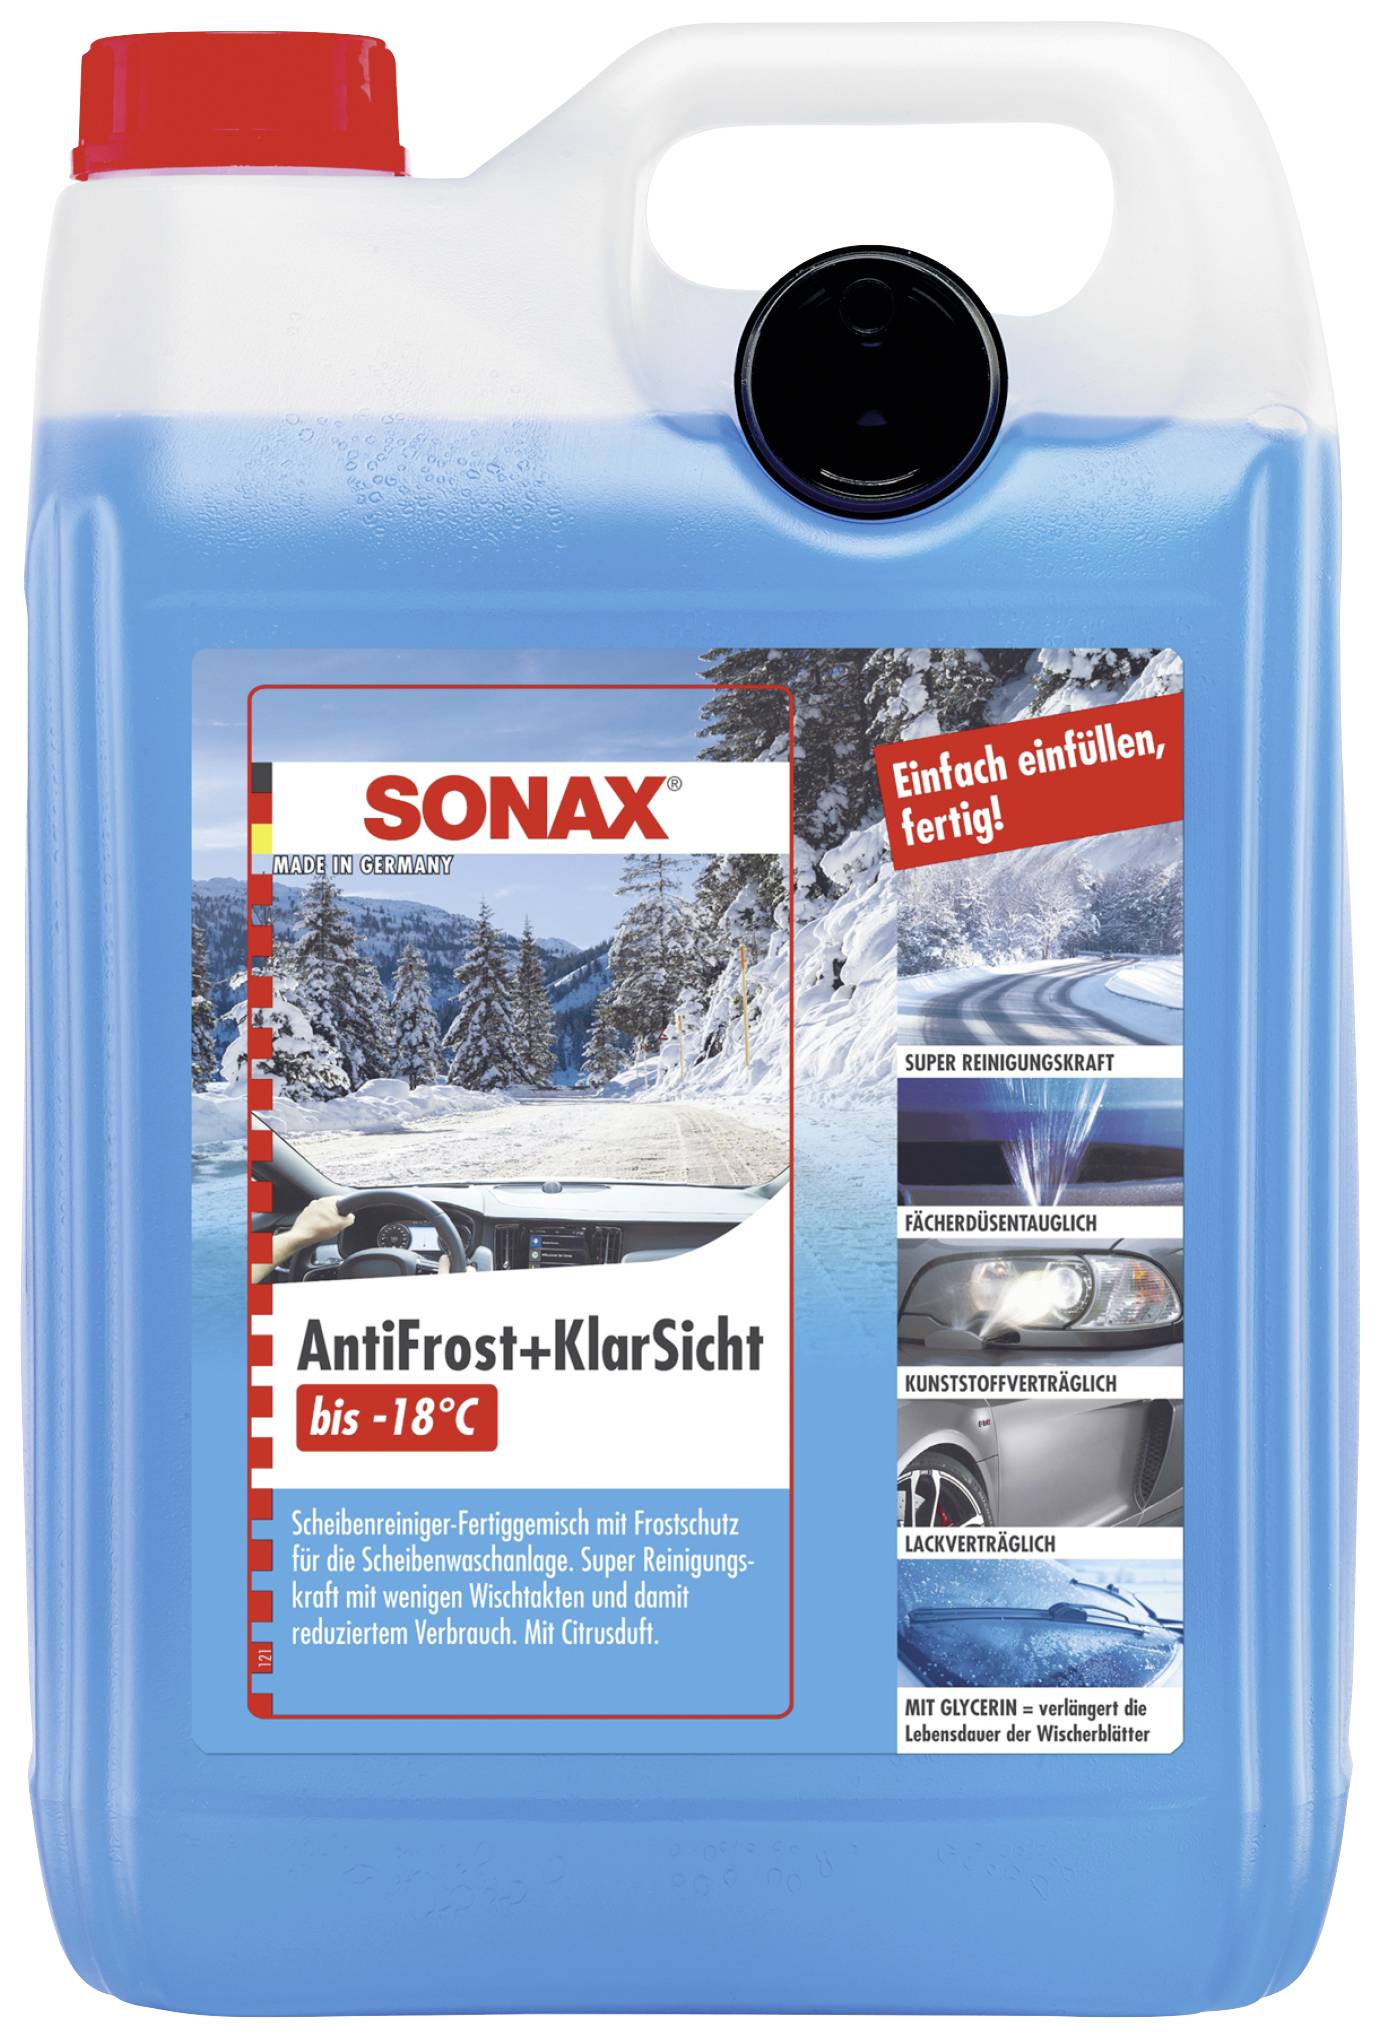 SONAX, Frostschutz, Scheibenreinigungsanlage, Antifrost&KlarSicht bis  -20°C Zirbe, AntiFrost+KlarSicht